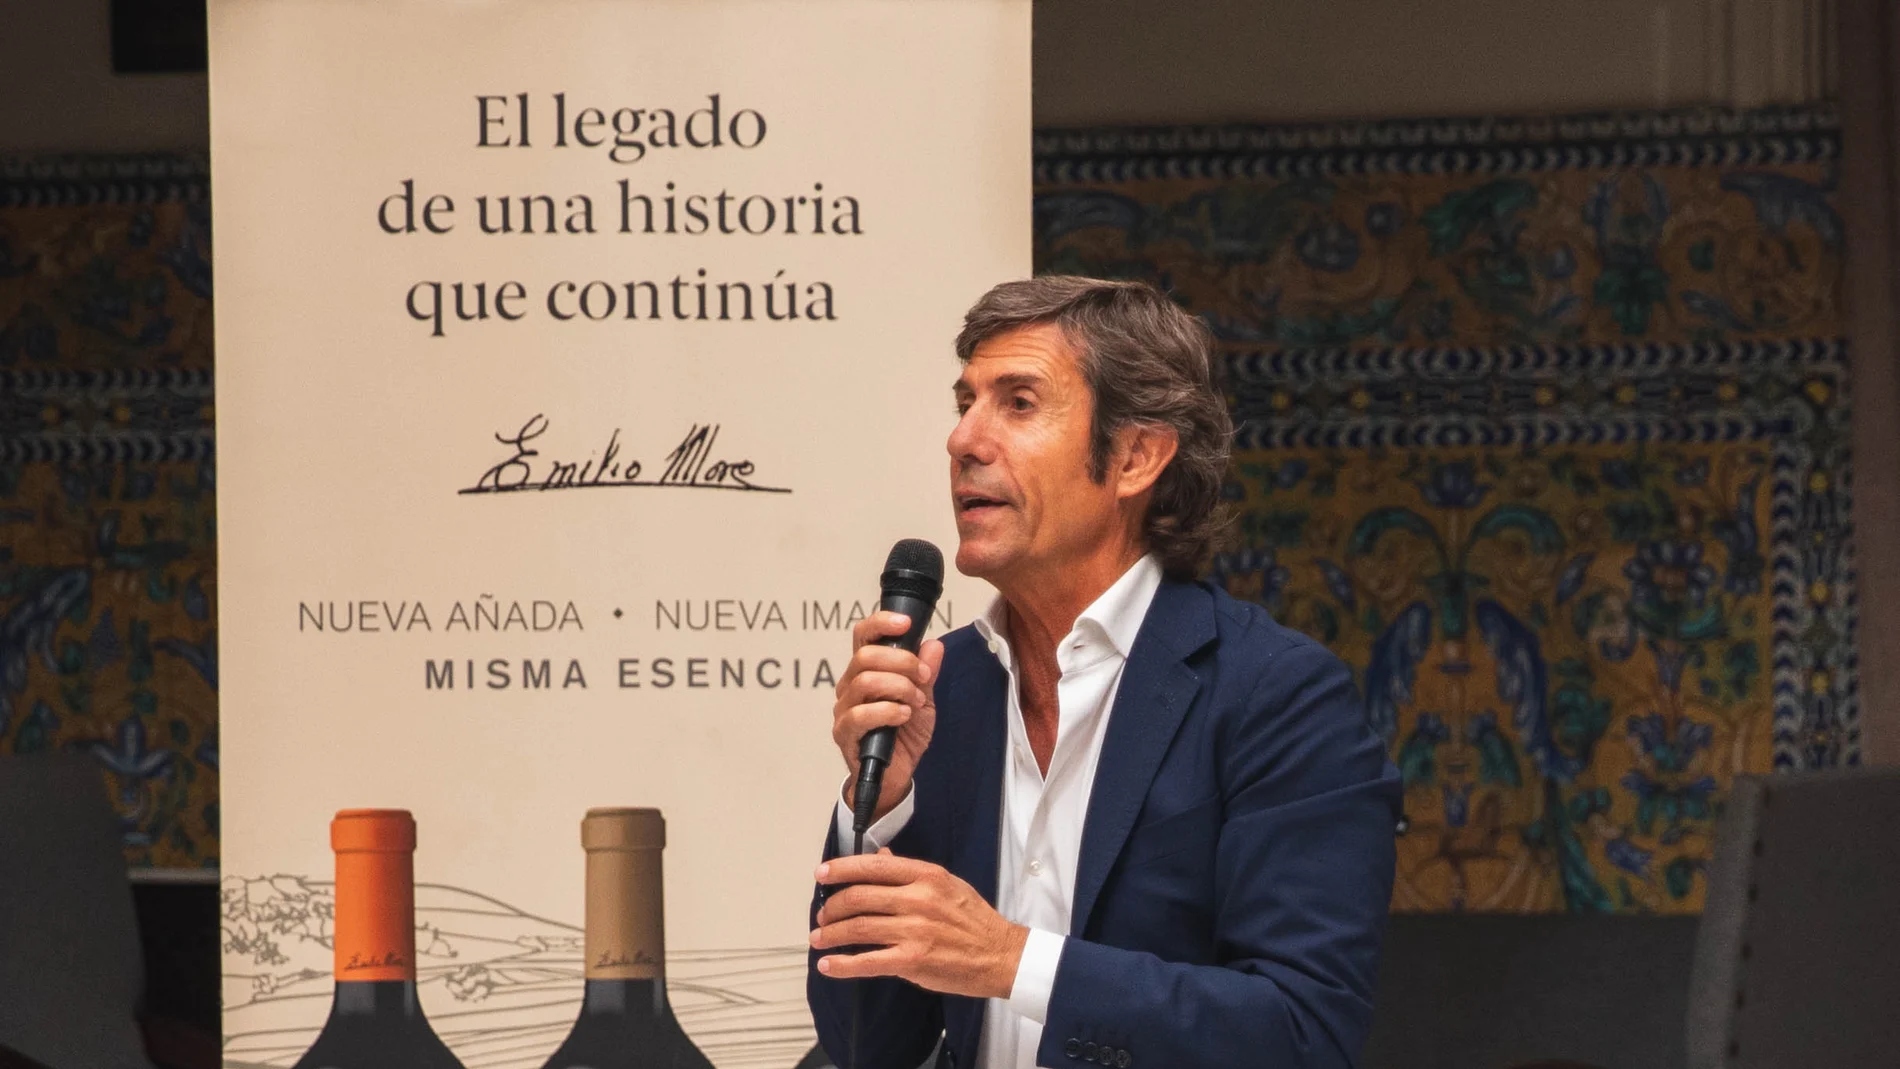 El presidente de la bodega vallisoletana, Javier Moro, presenta la nueva creación de la bodega, Elalba de Emilio Moro